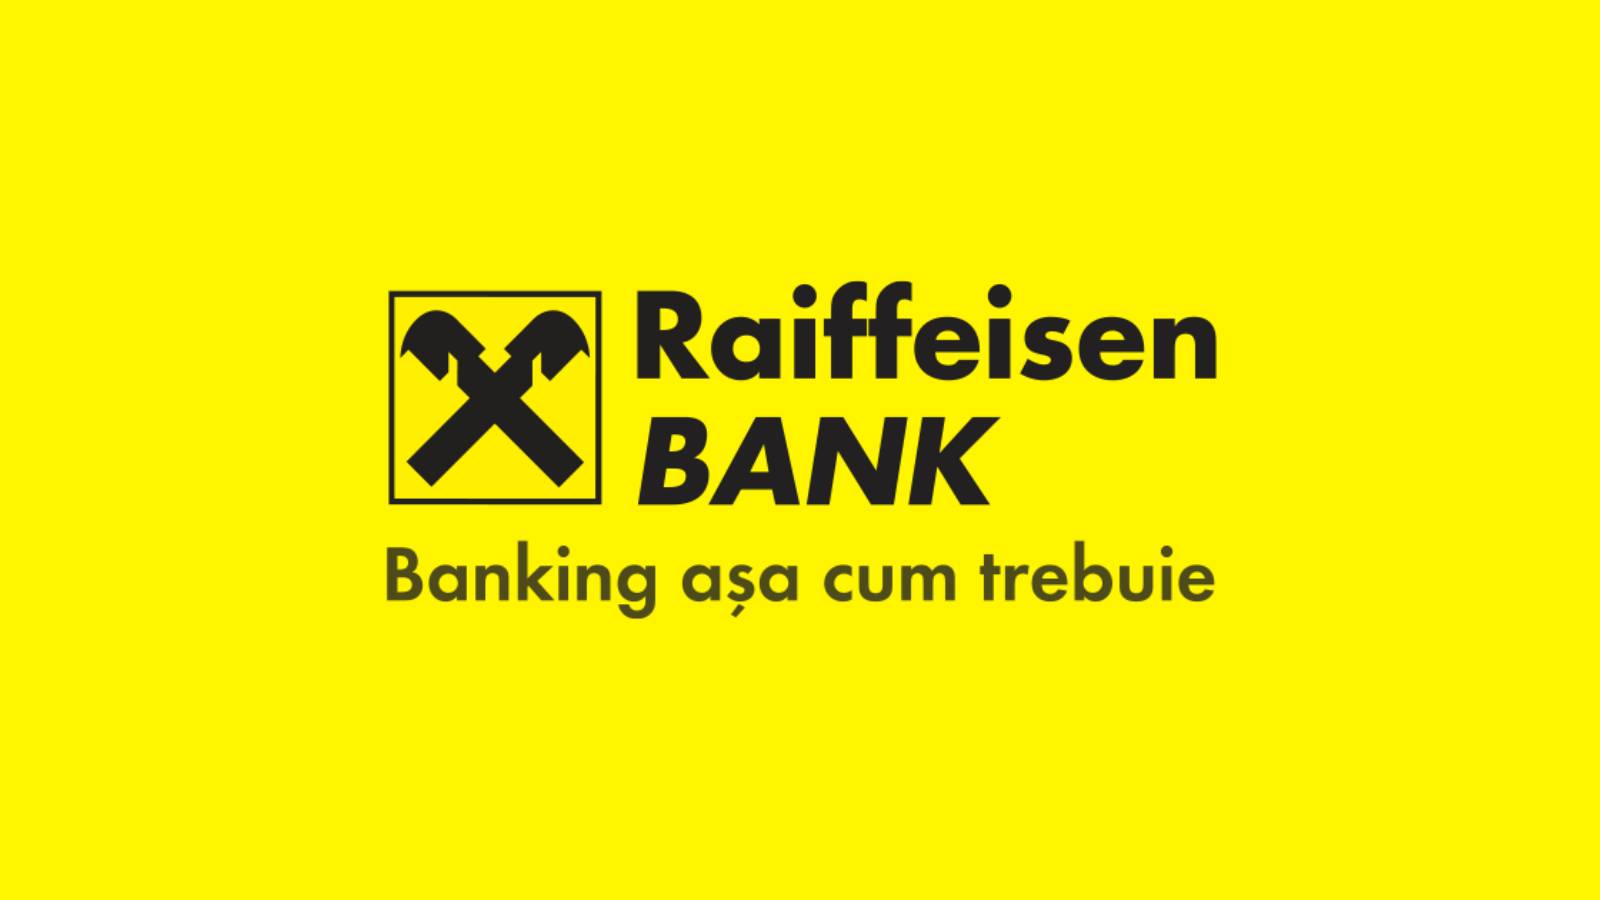 Raiffeisen Bank strand